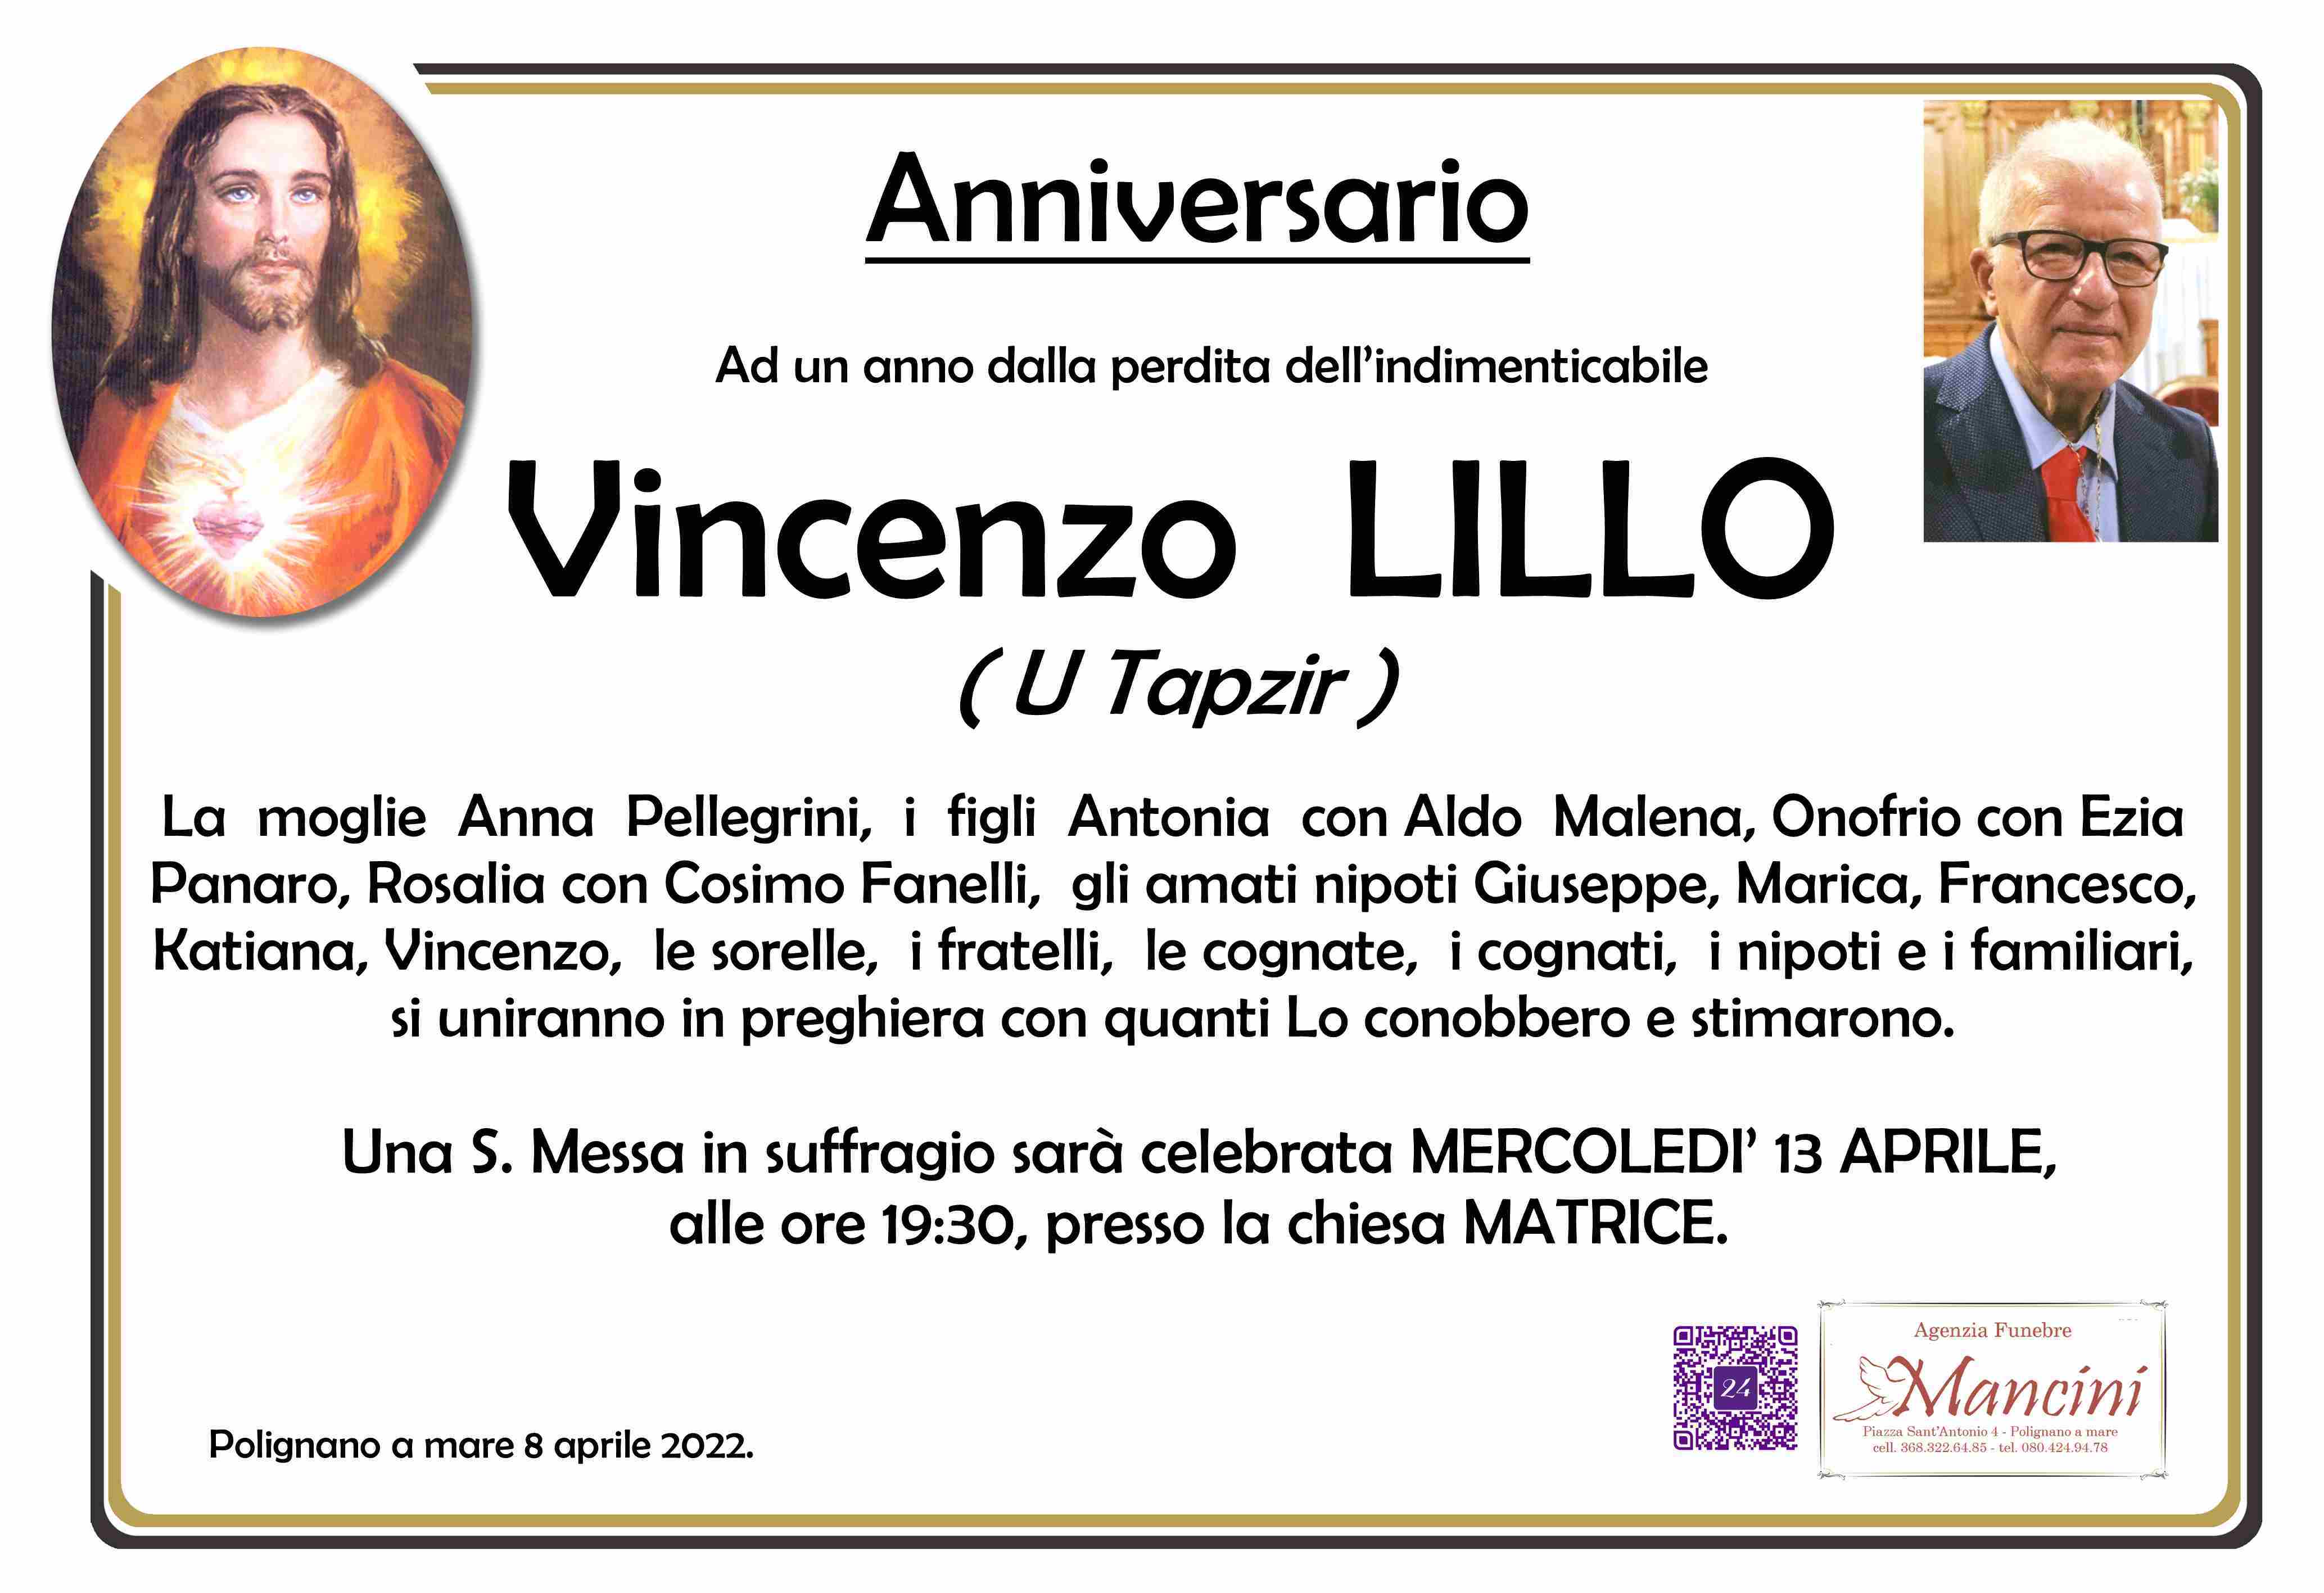 Vincenzo Lillo